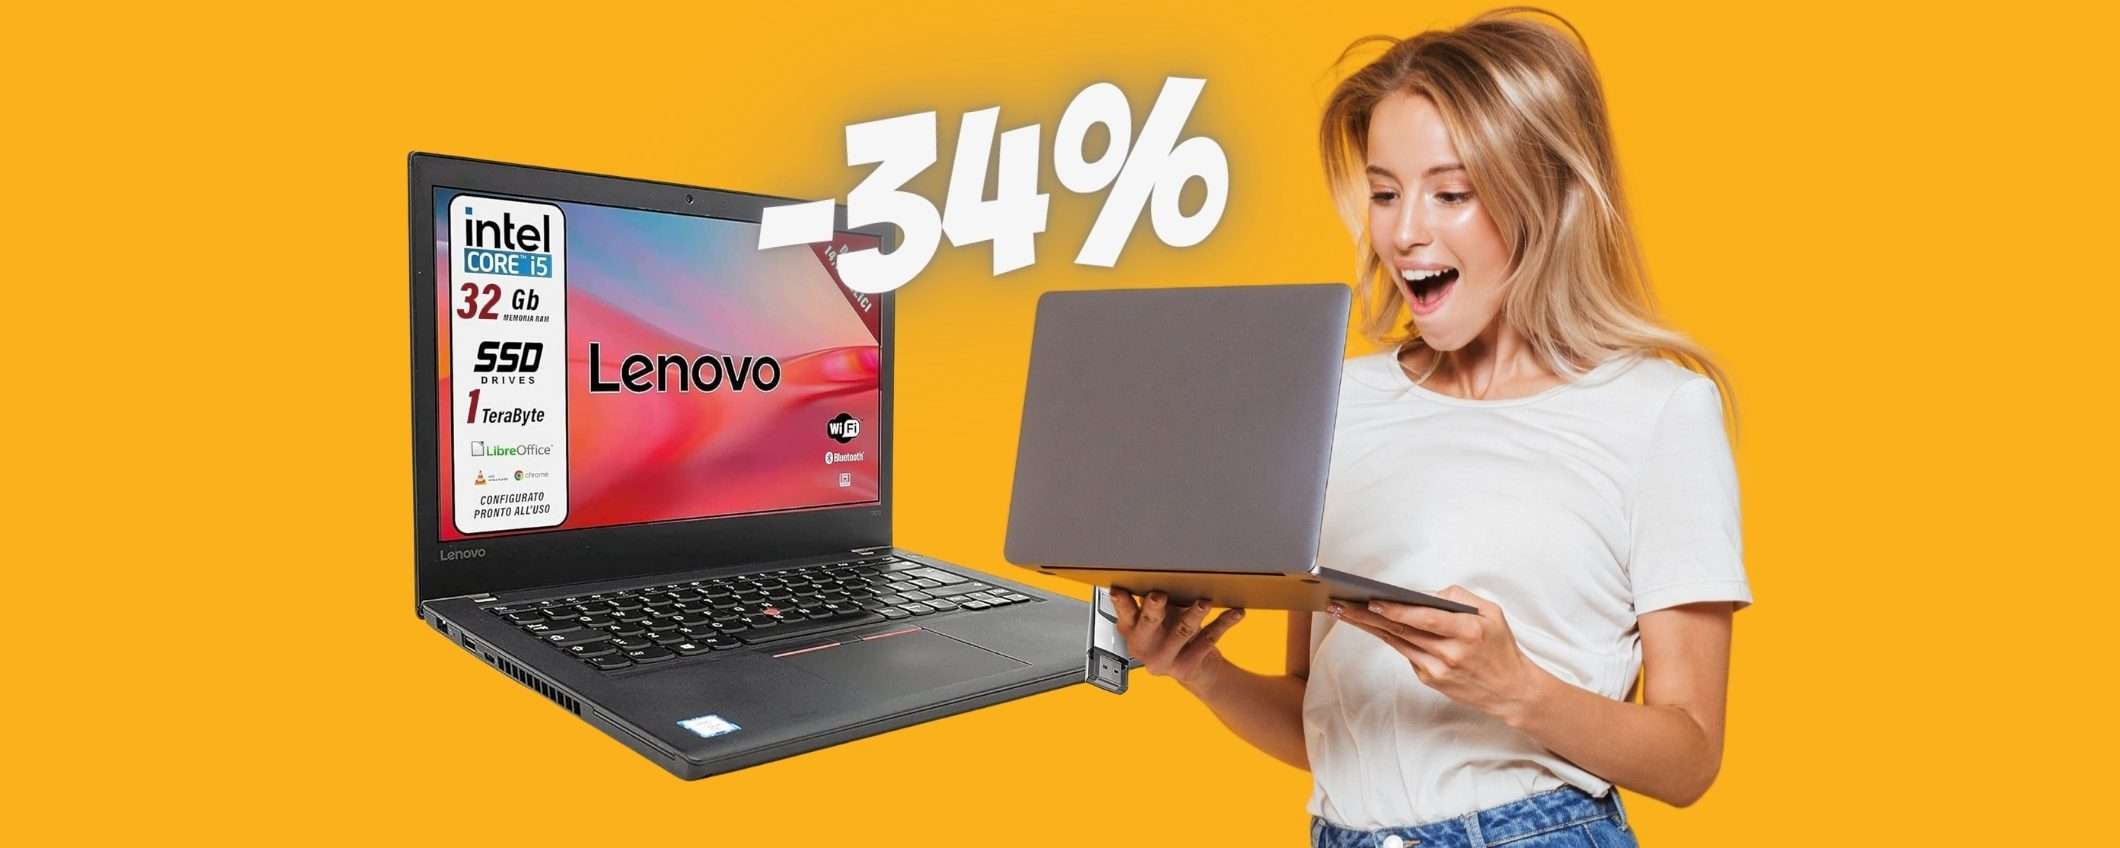 Portatile Lenovo con i5, 32GB RAM, SSD da 1TB al 34% (ricondizionato)